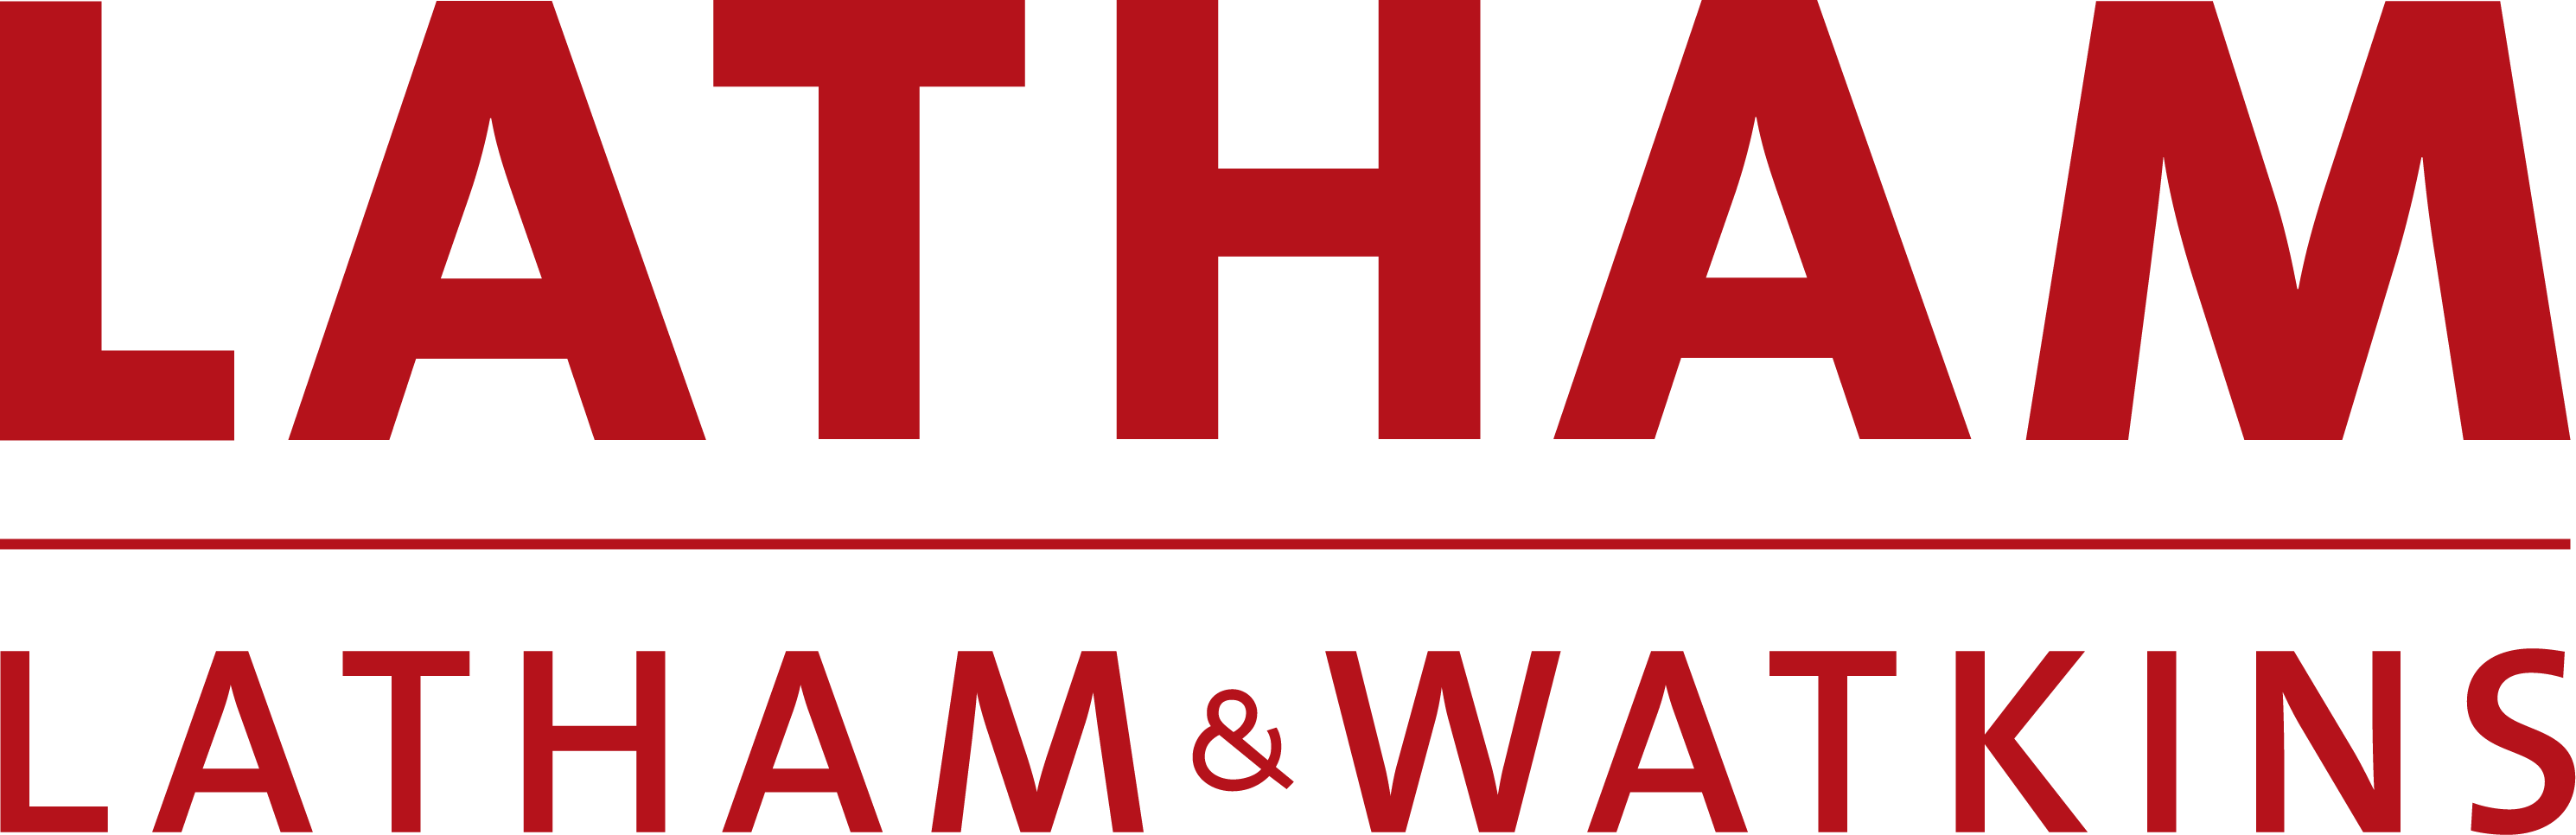 Latham & Watkins Sponsorship logo